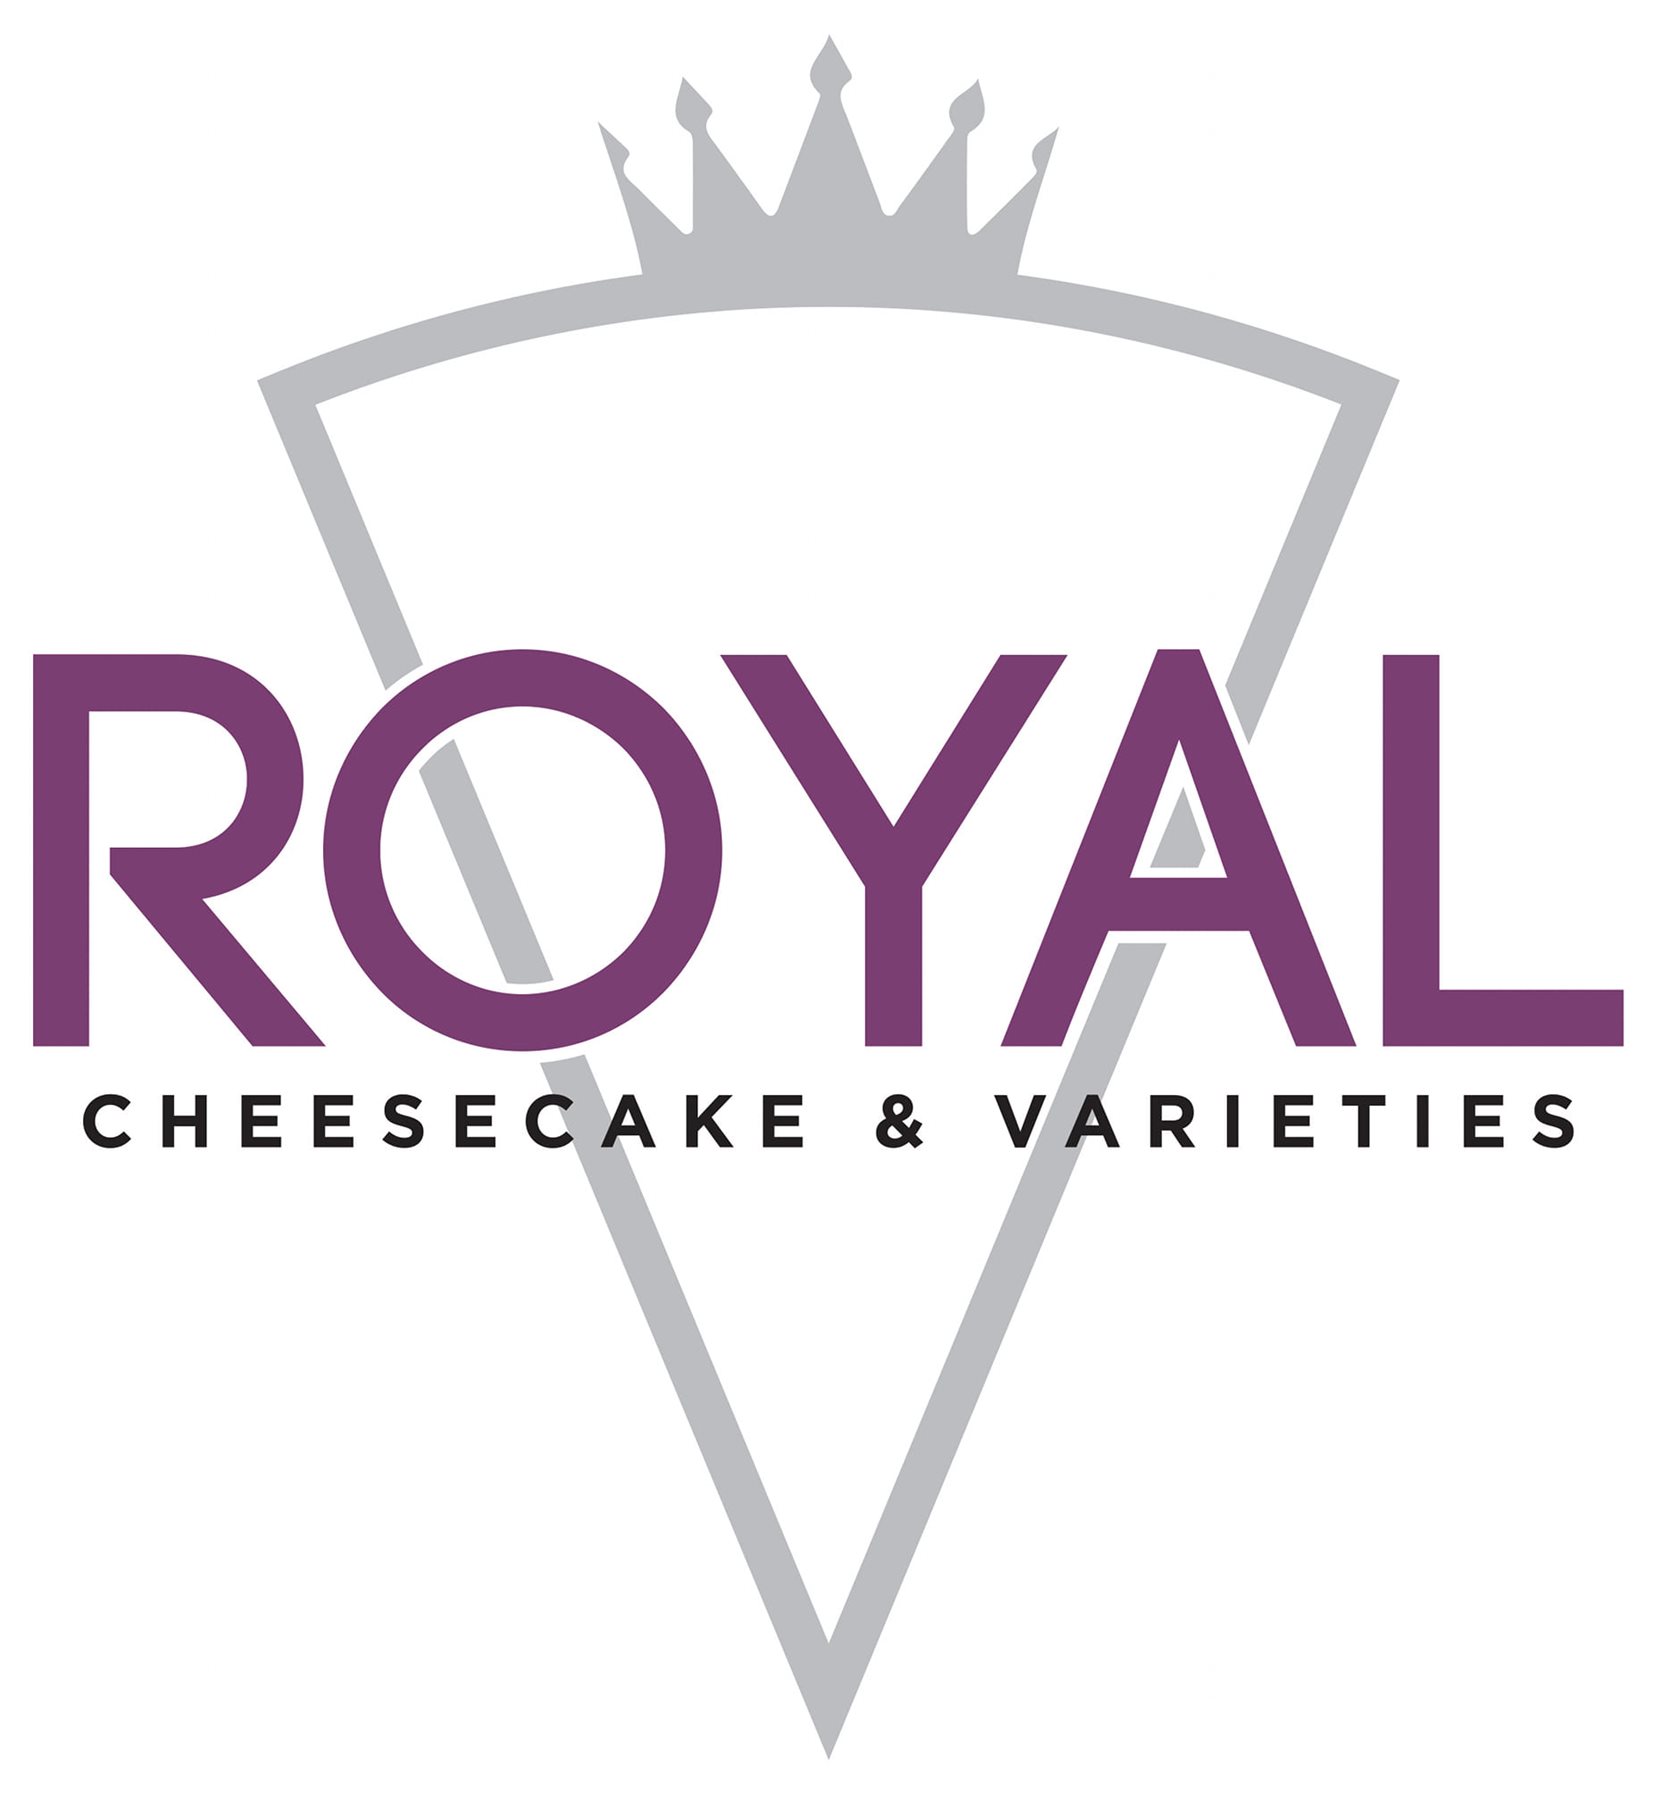 Royal Cheesecake & Varieties